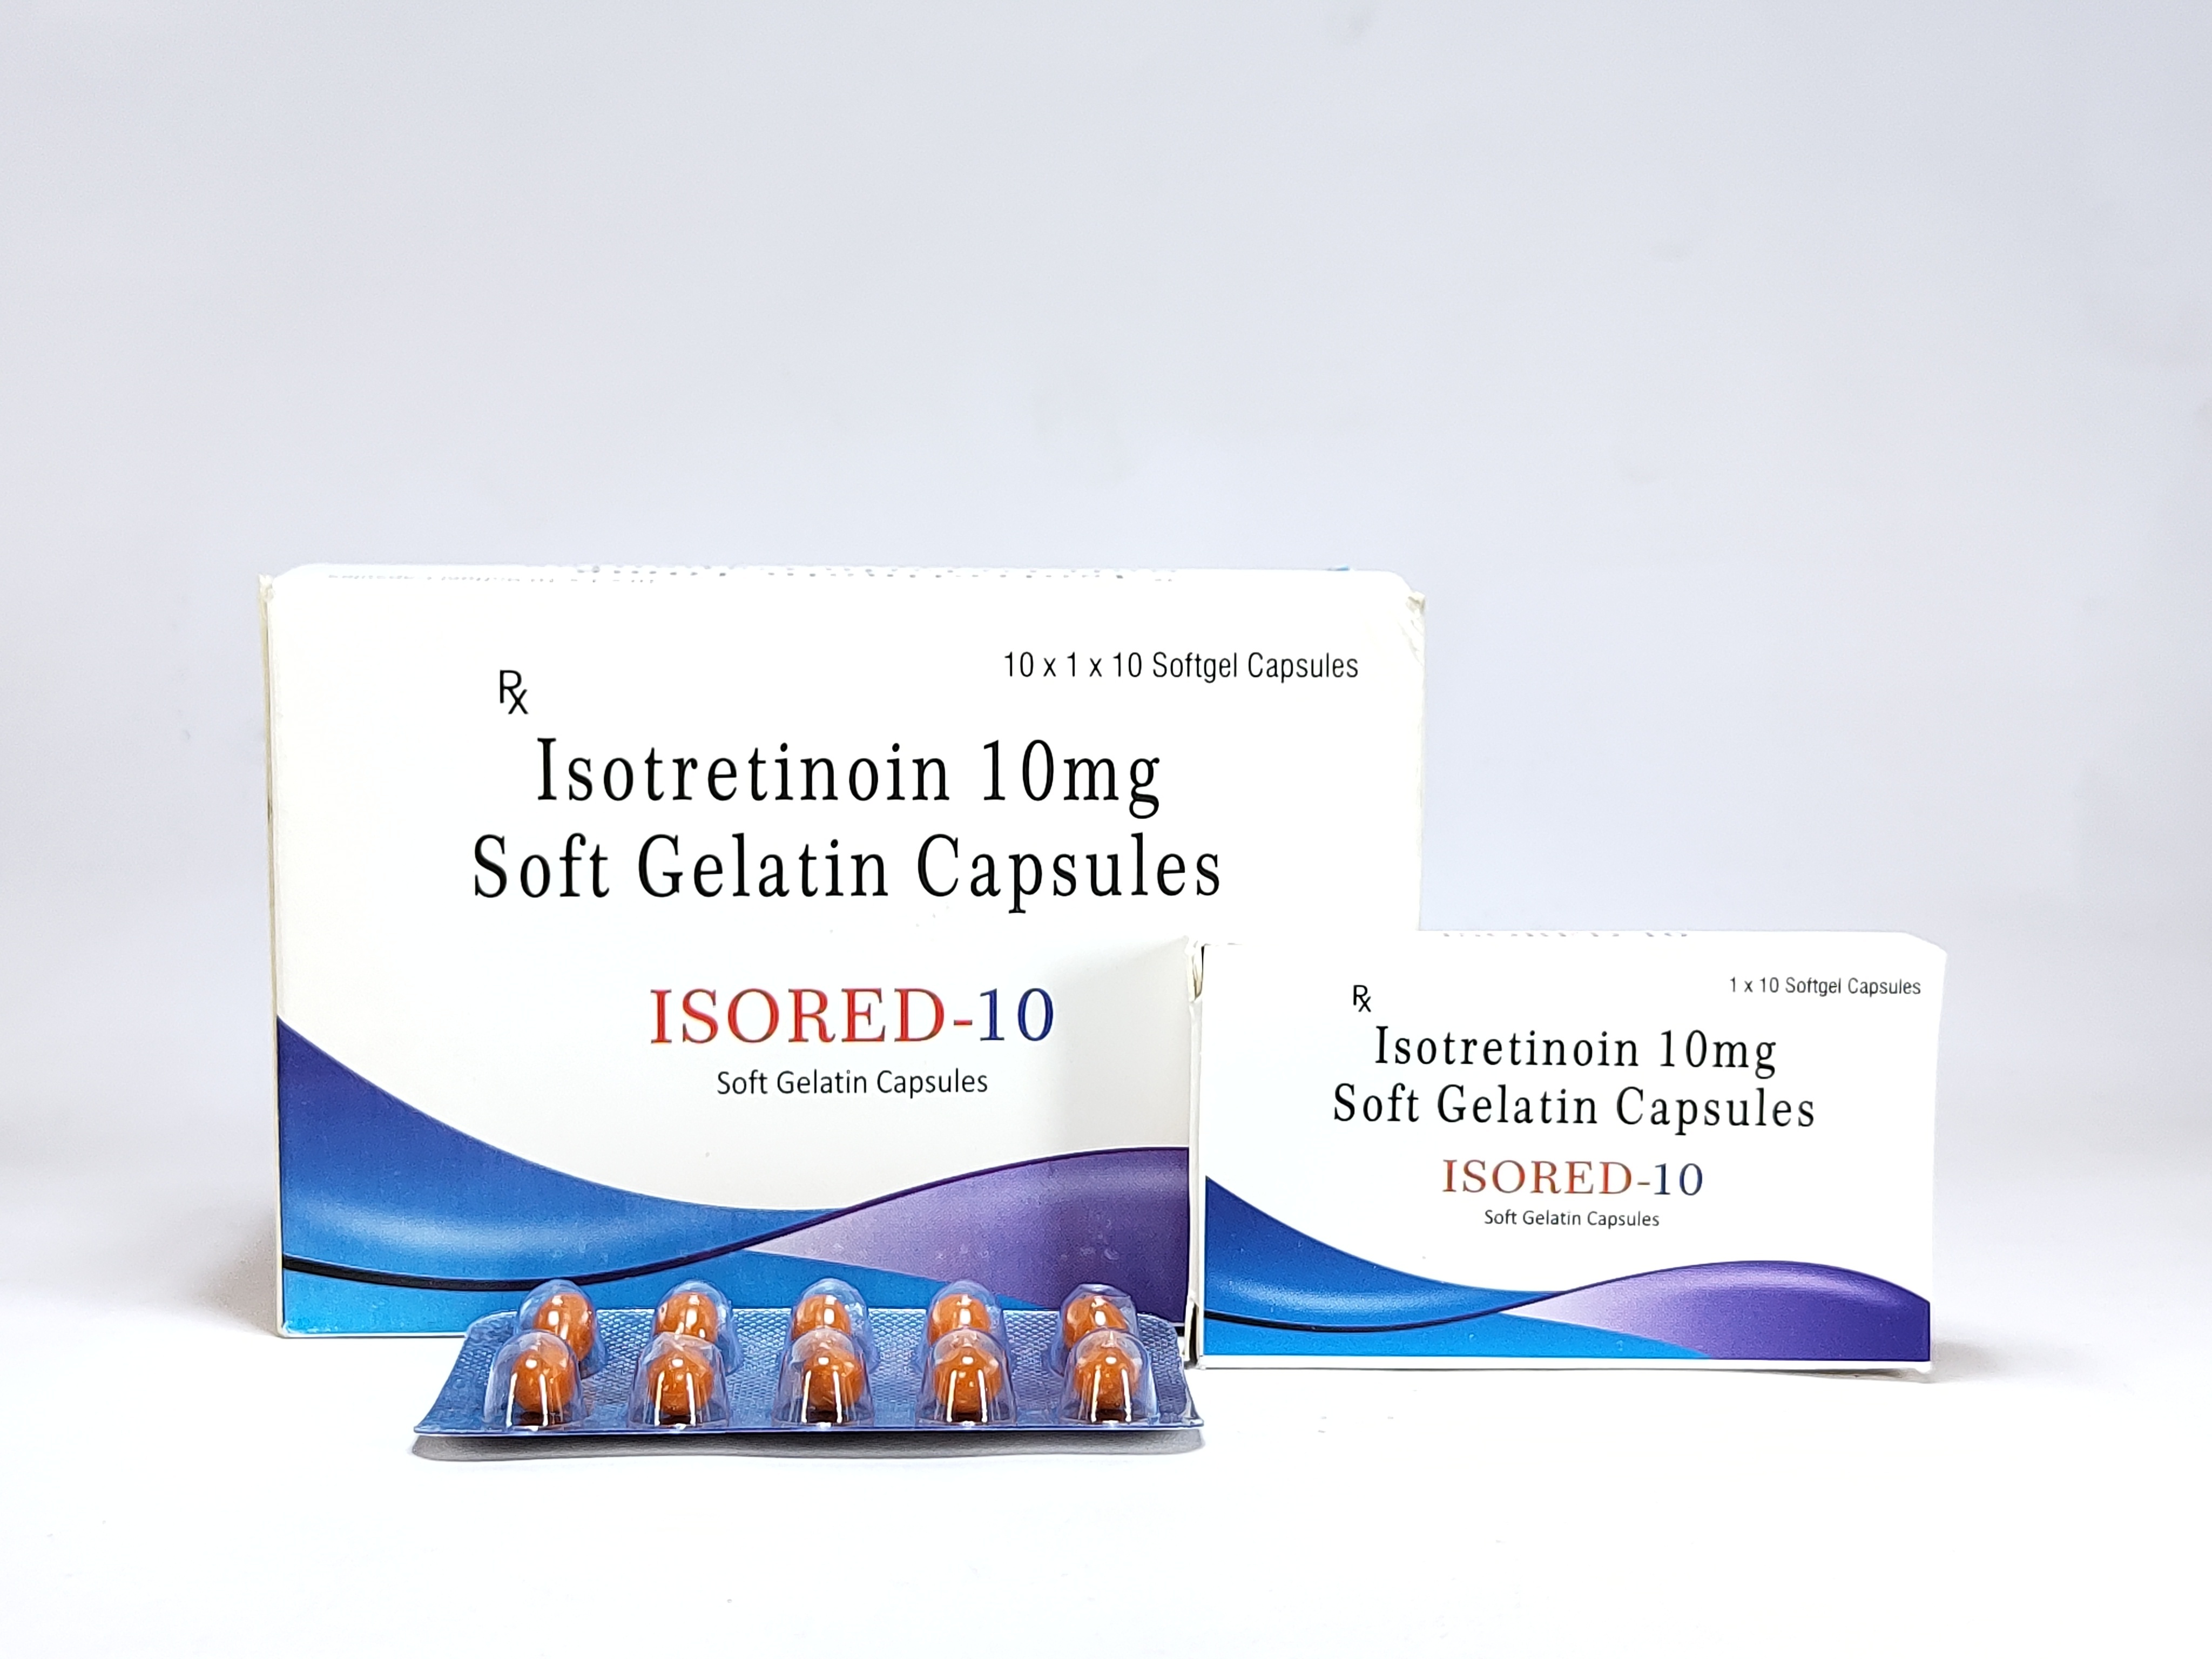 Isored-10 tablet